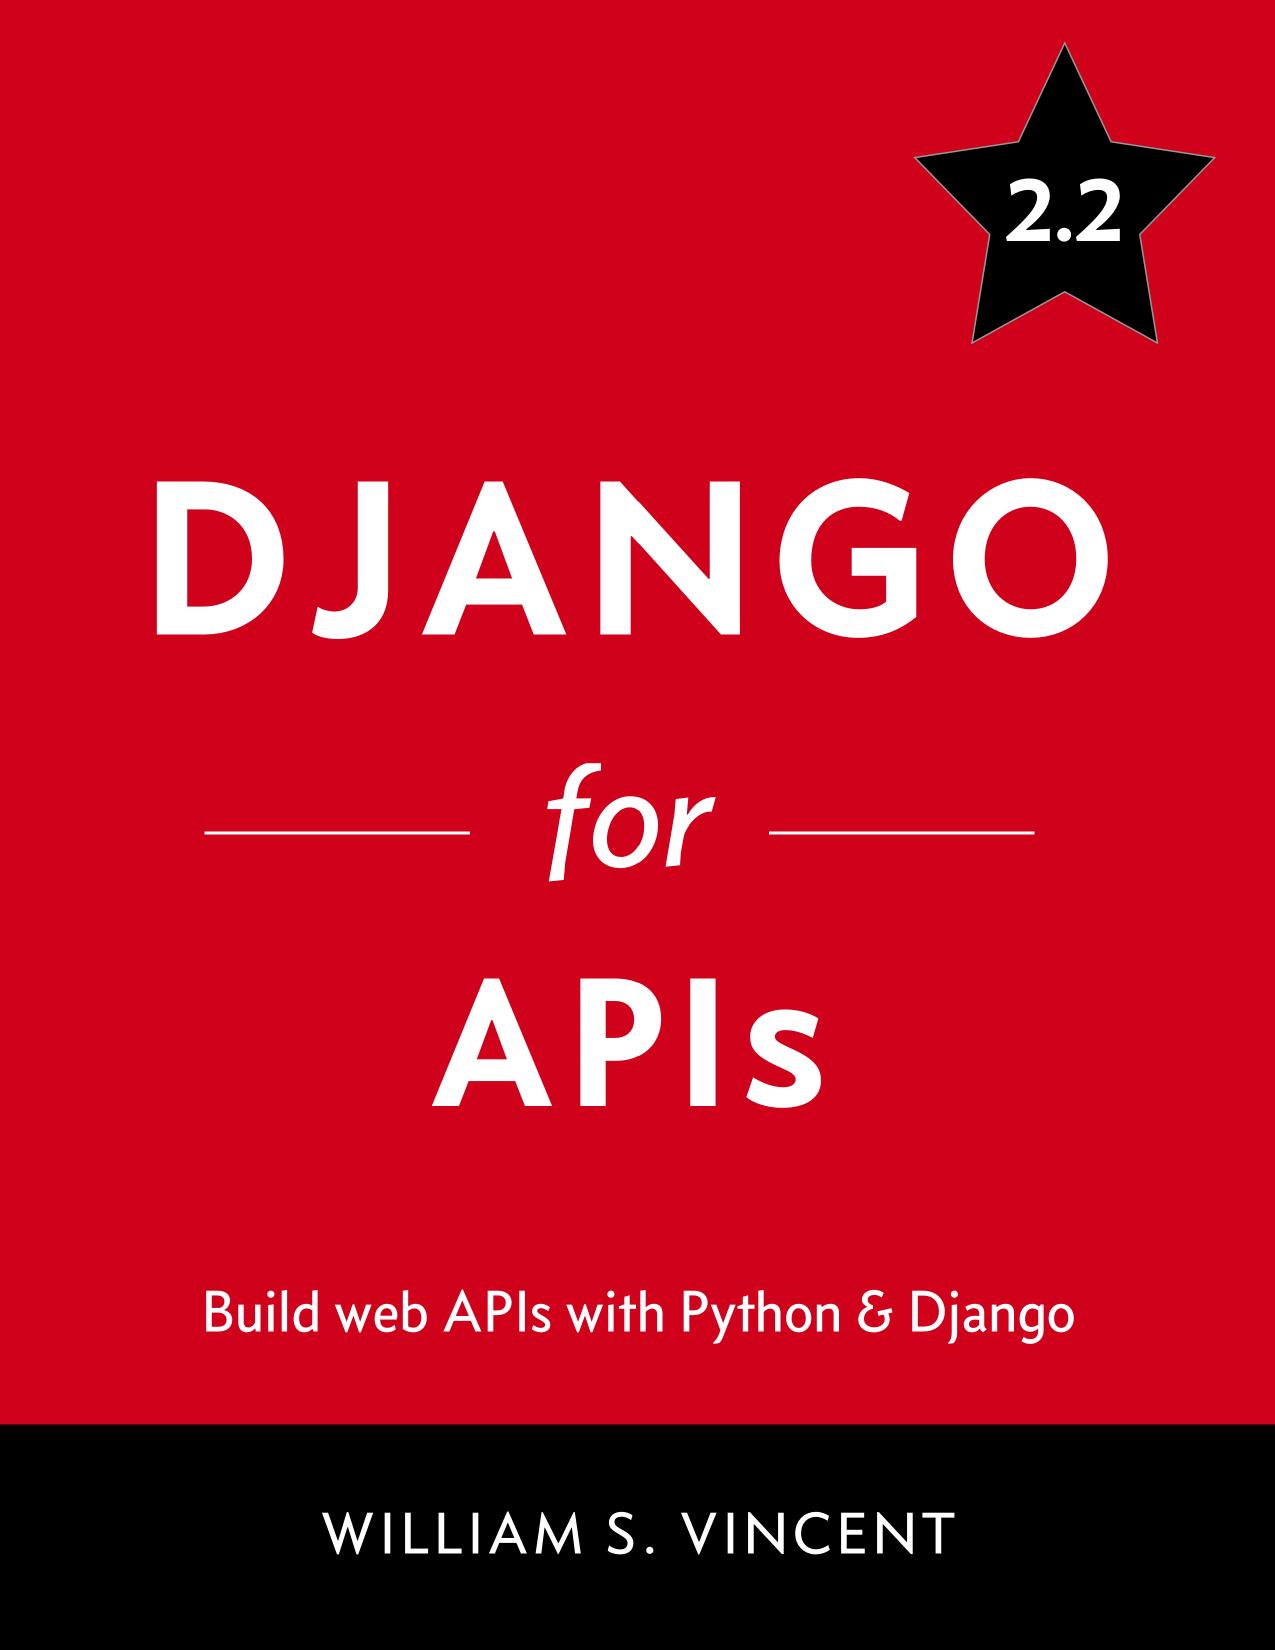 Django for APIs: Build Web APIs With Python & Django